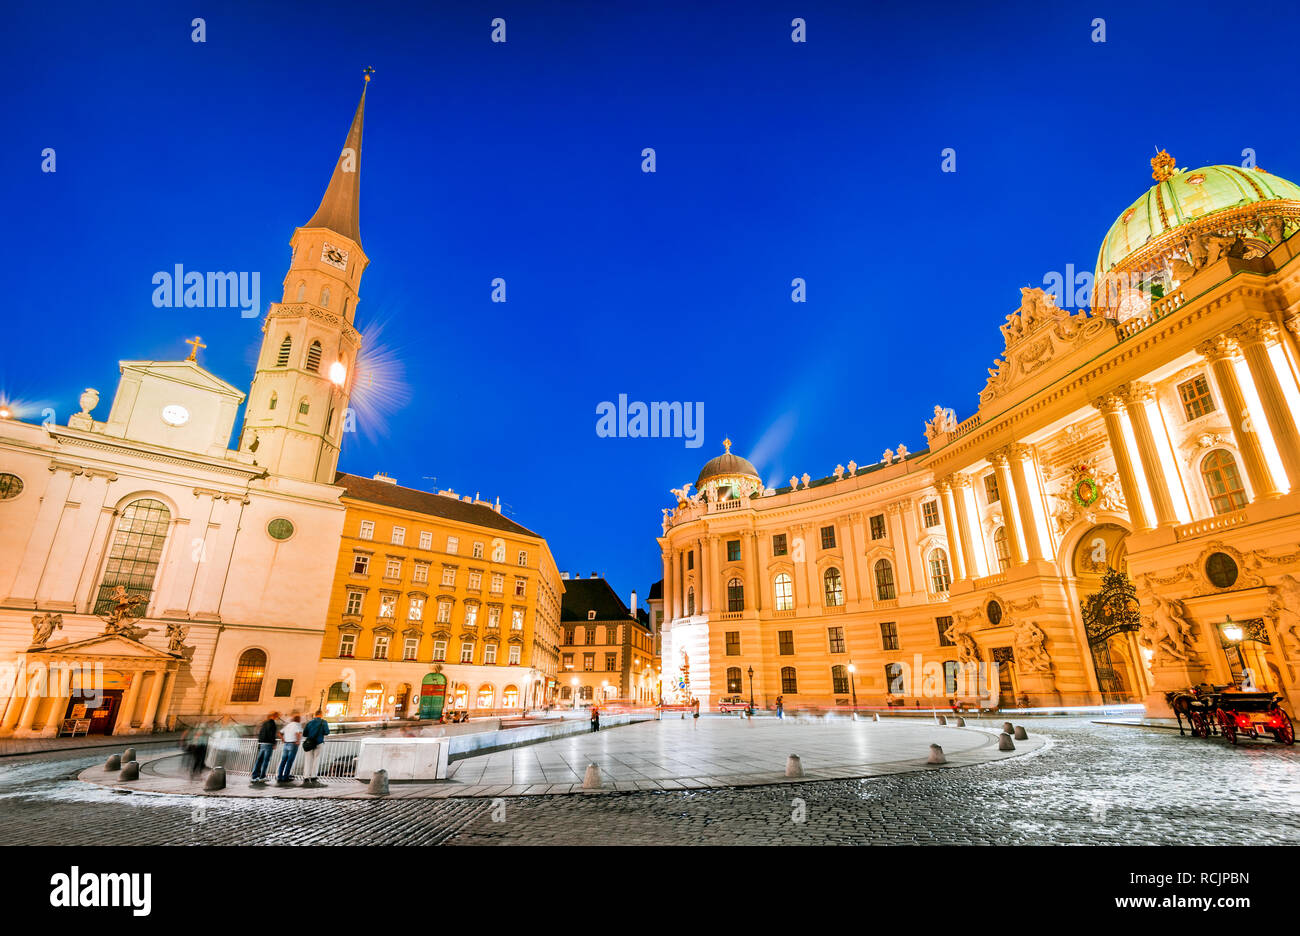 Vienne, Autriche. Michaelerplatz, grand angle de vue au crépuscule avec Michaelkirche, Habsburg Empire Landmark in Wien Banque D'Images